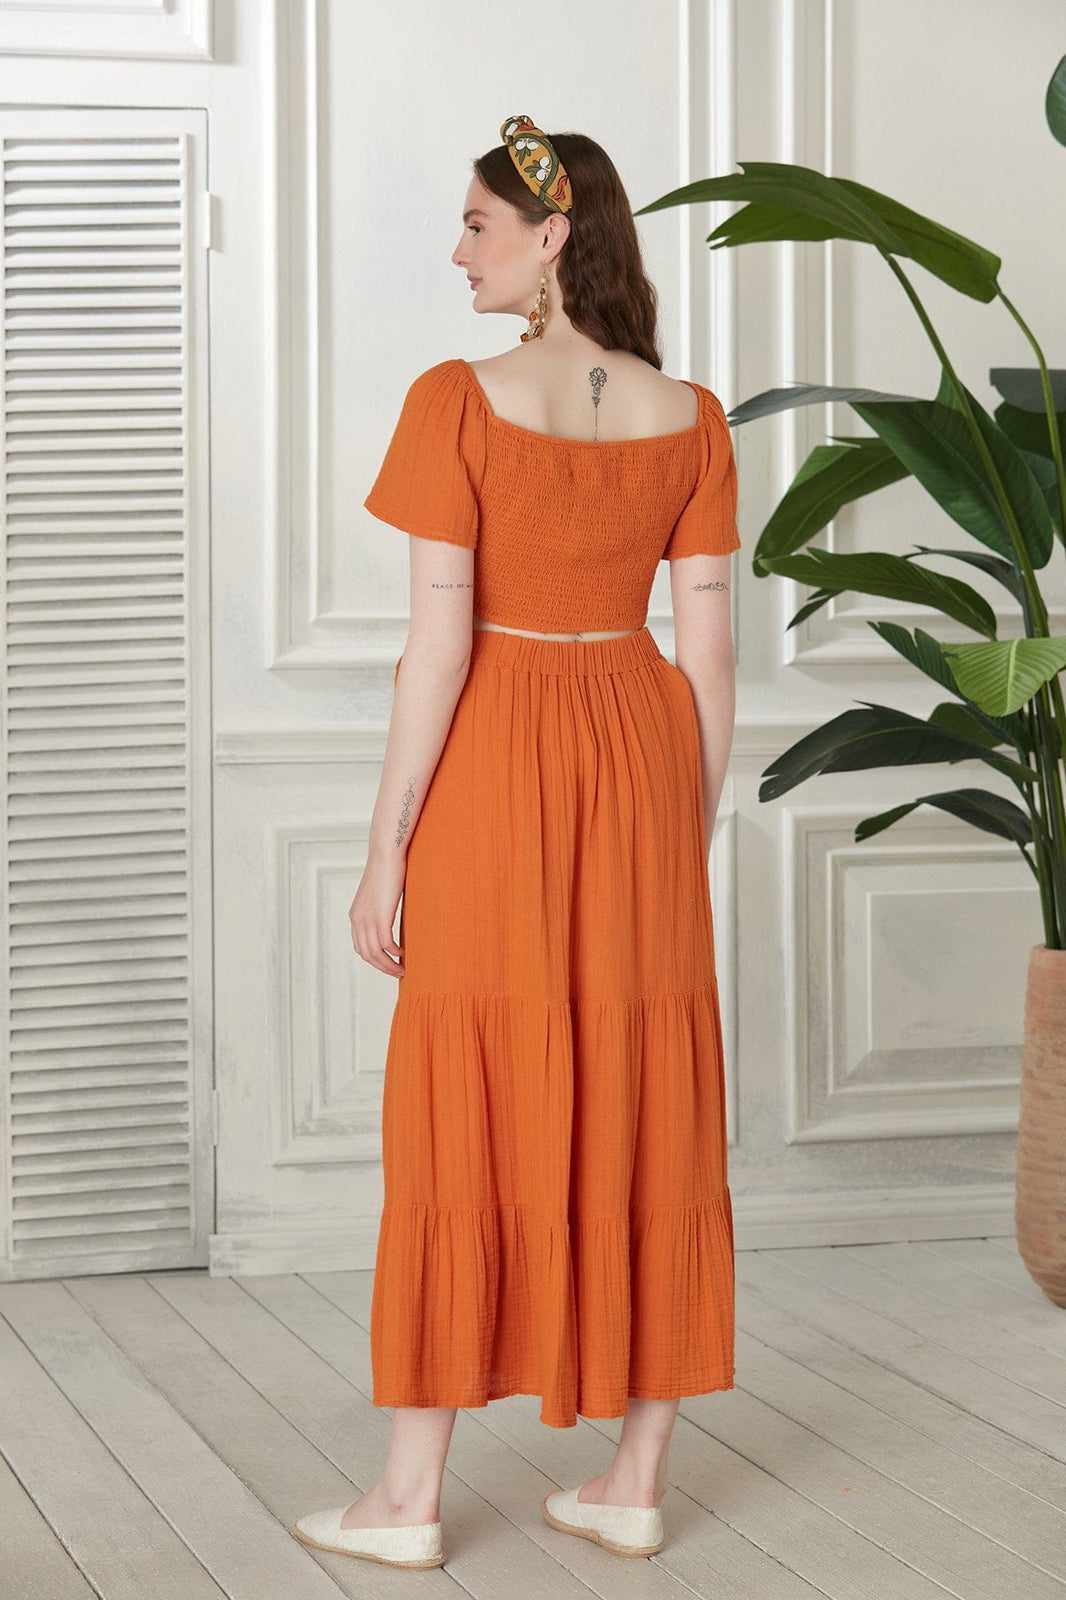 Begonville Sets Ava Crop Top & Skirt Cotton Set - Orange